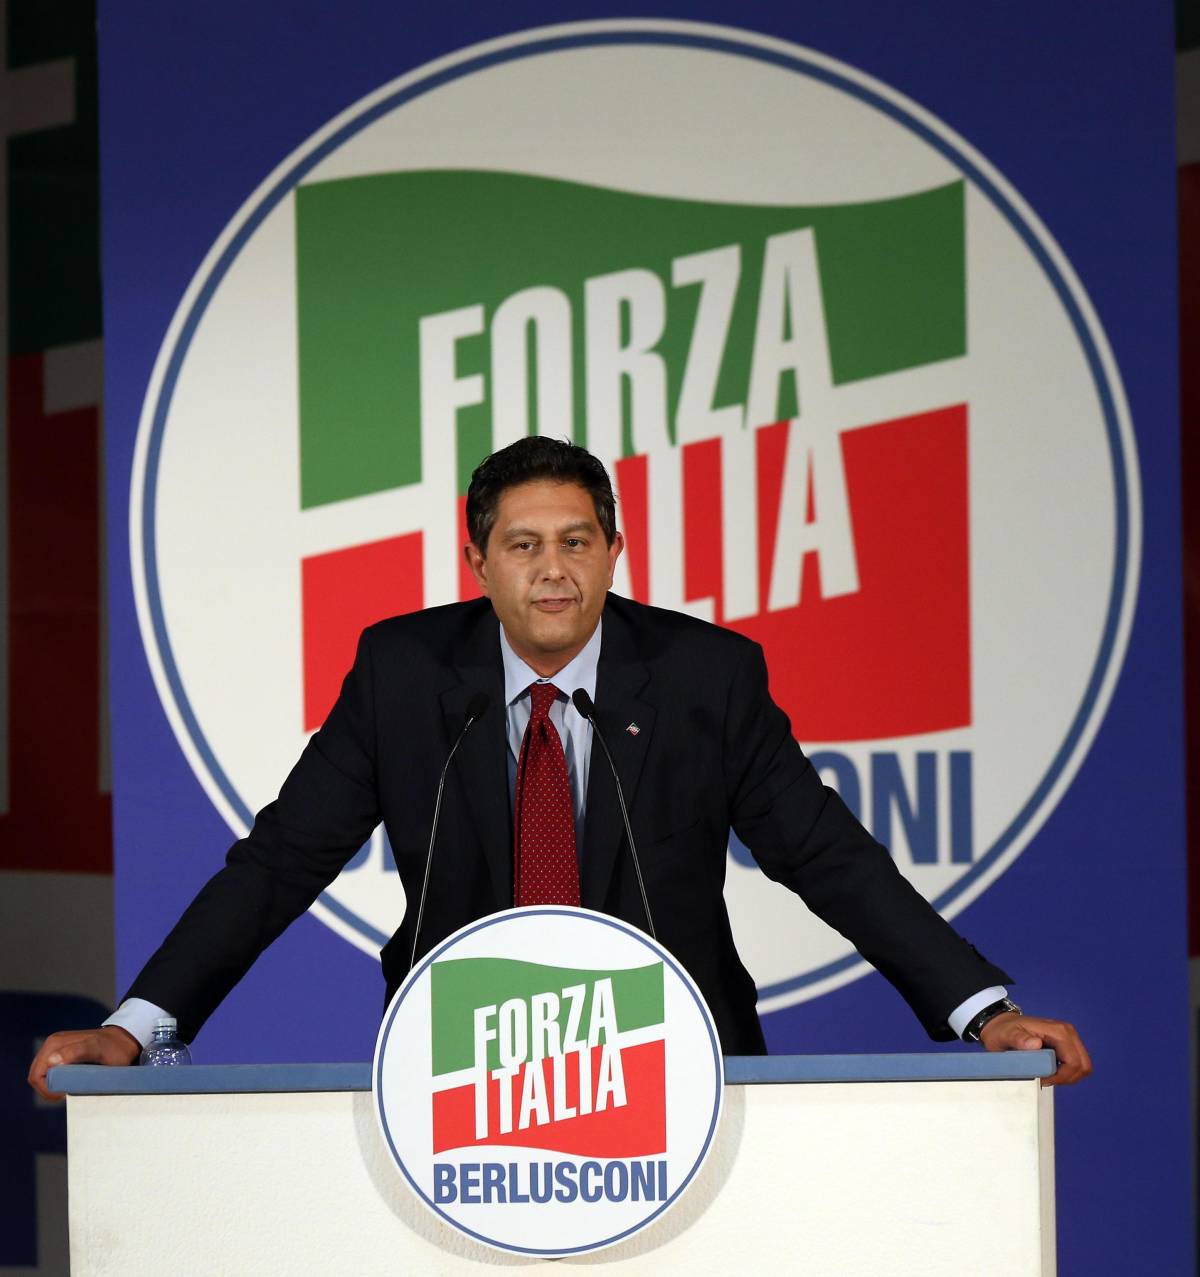 L'operazione anti Renzi: "Bisogna tornare uniti attorno a Berlusconi"